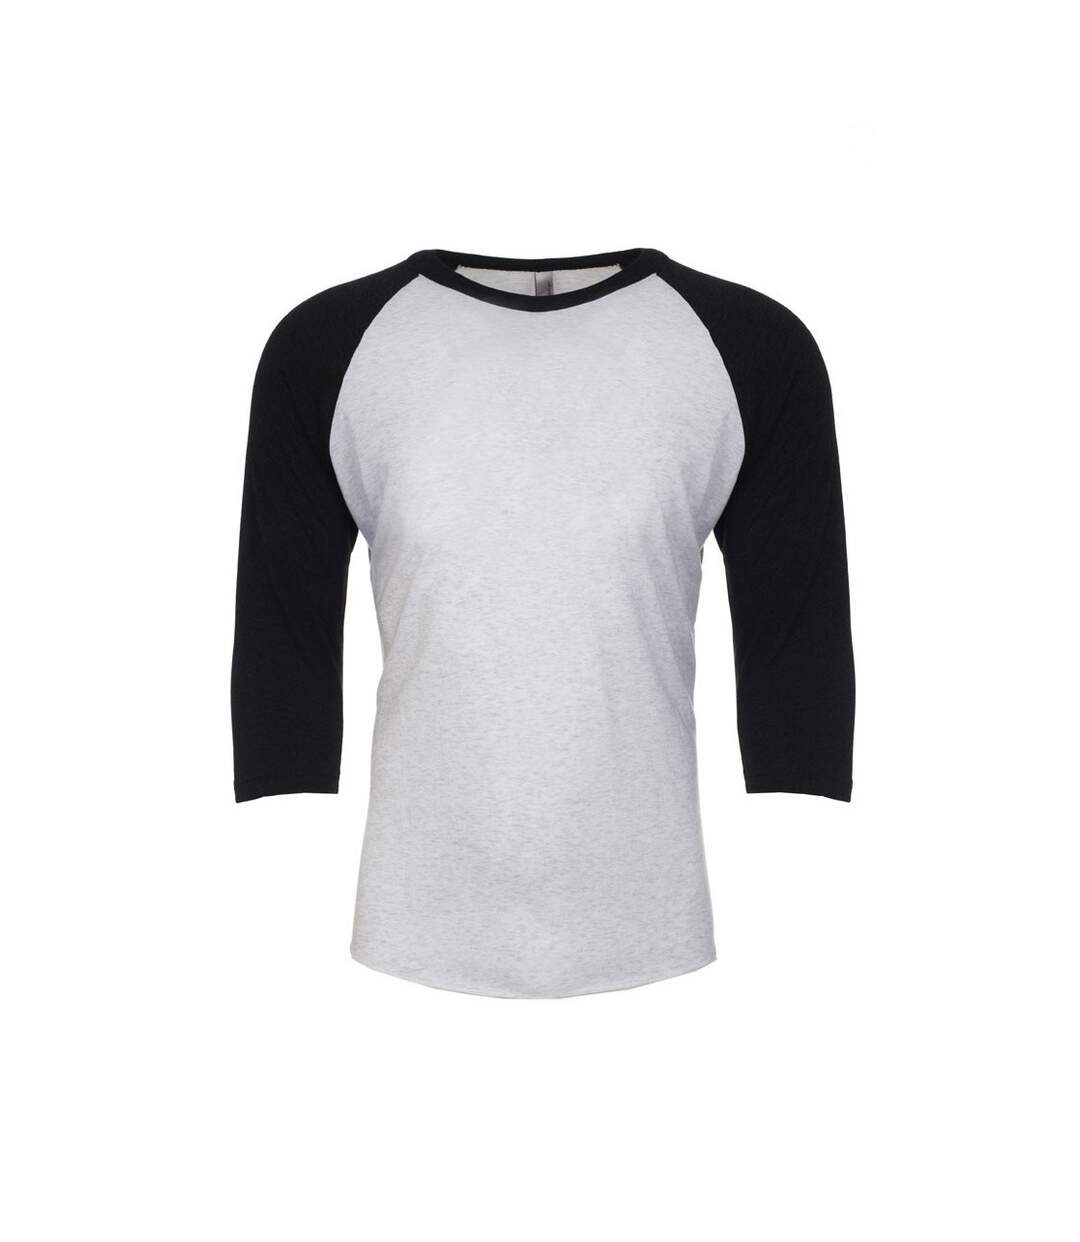 Next Level Adultes T-Shirt raglan unisexe à manches 3/4 en tri-blend (Noir vintage/blanc cuir) - UTPC3484